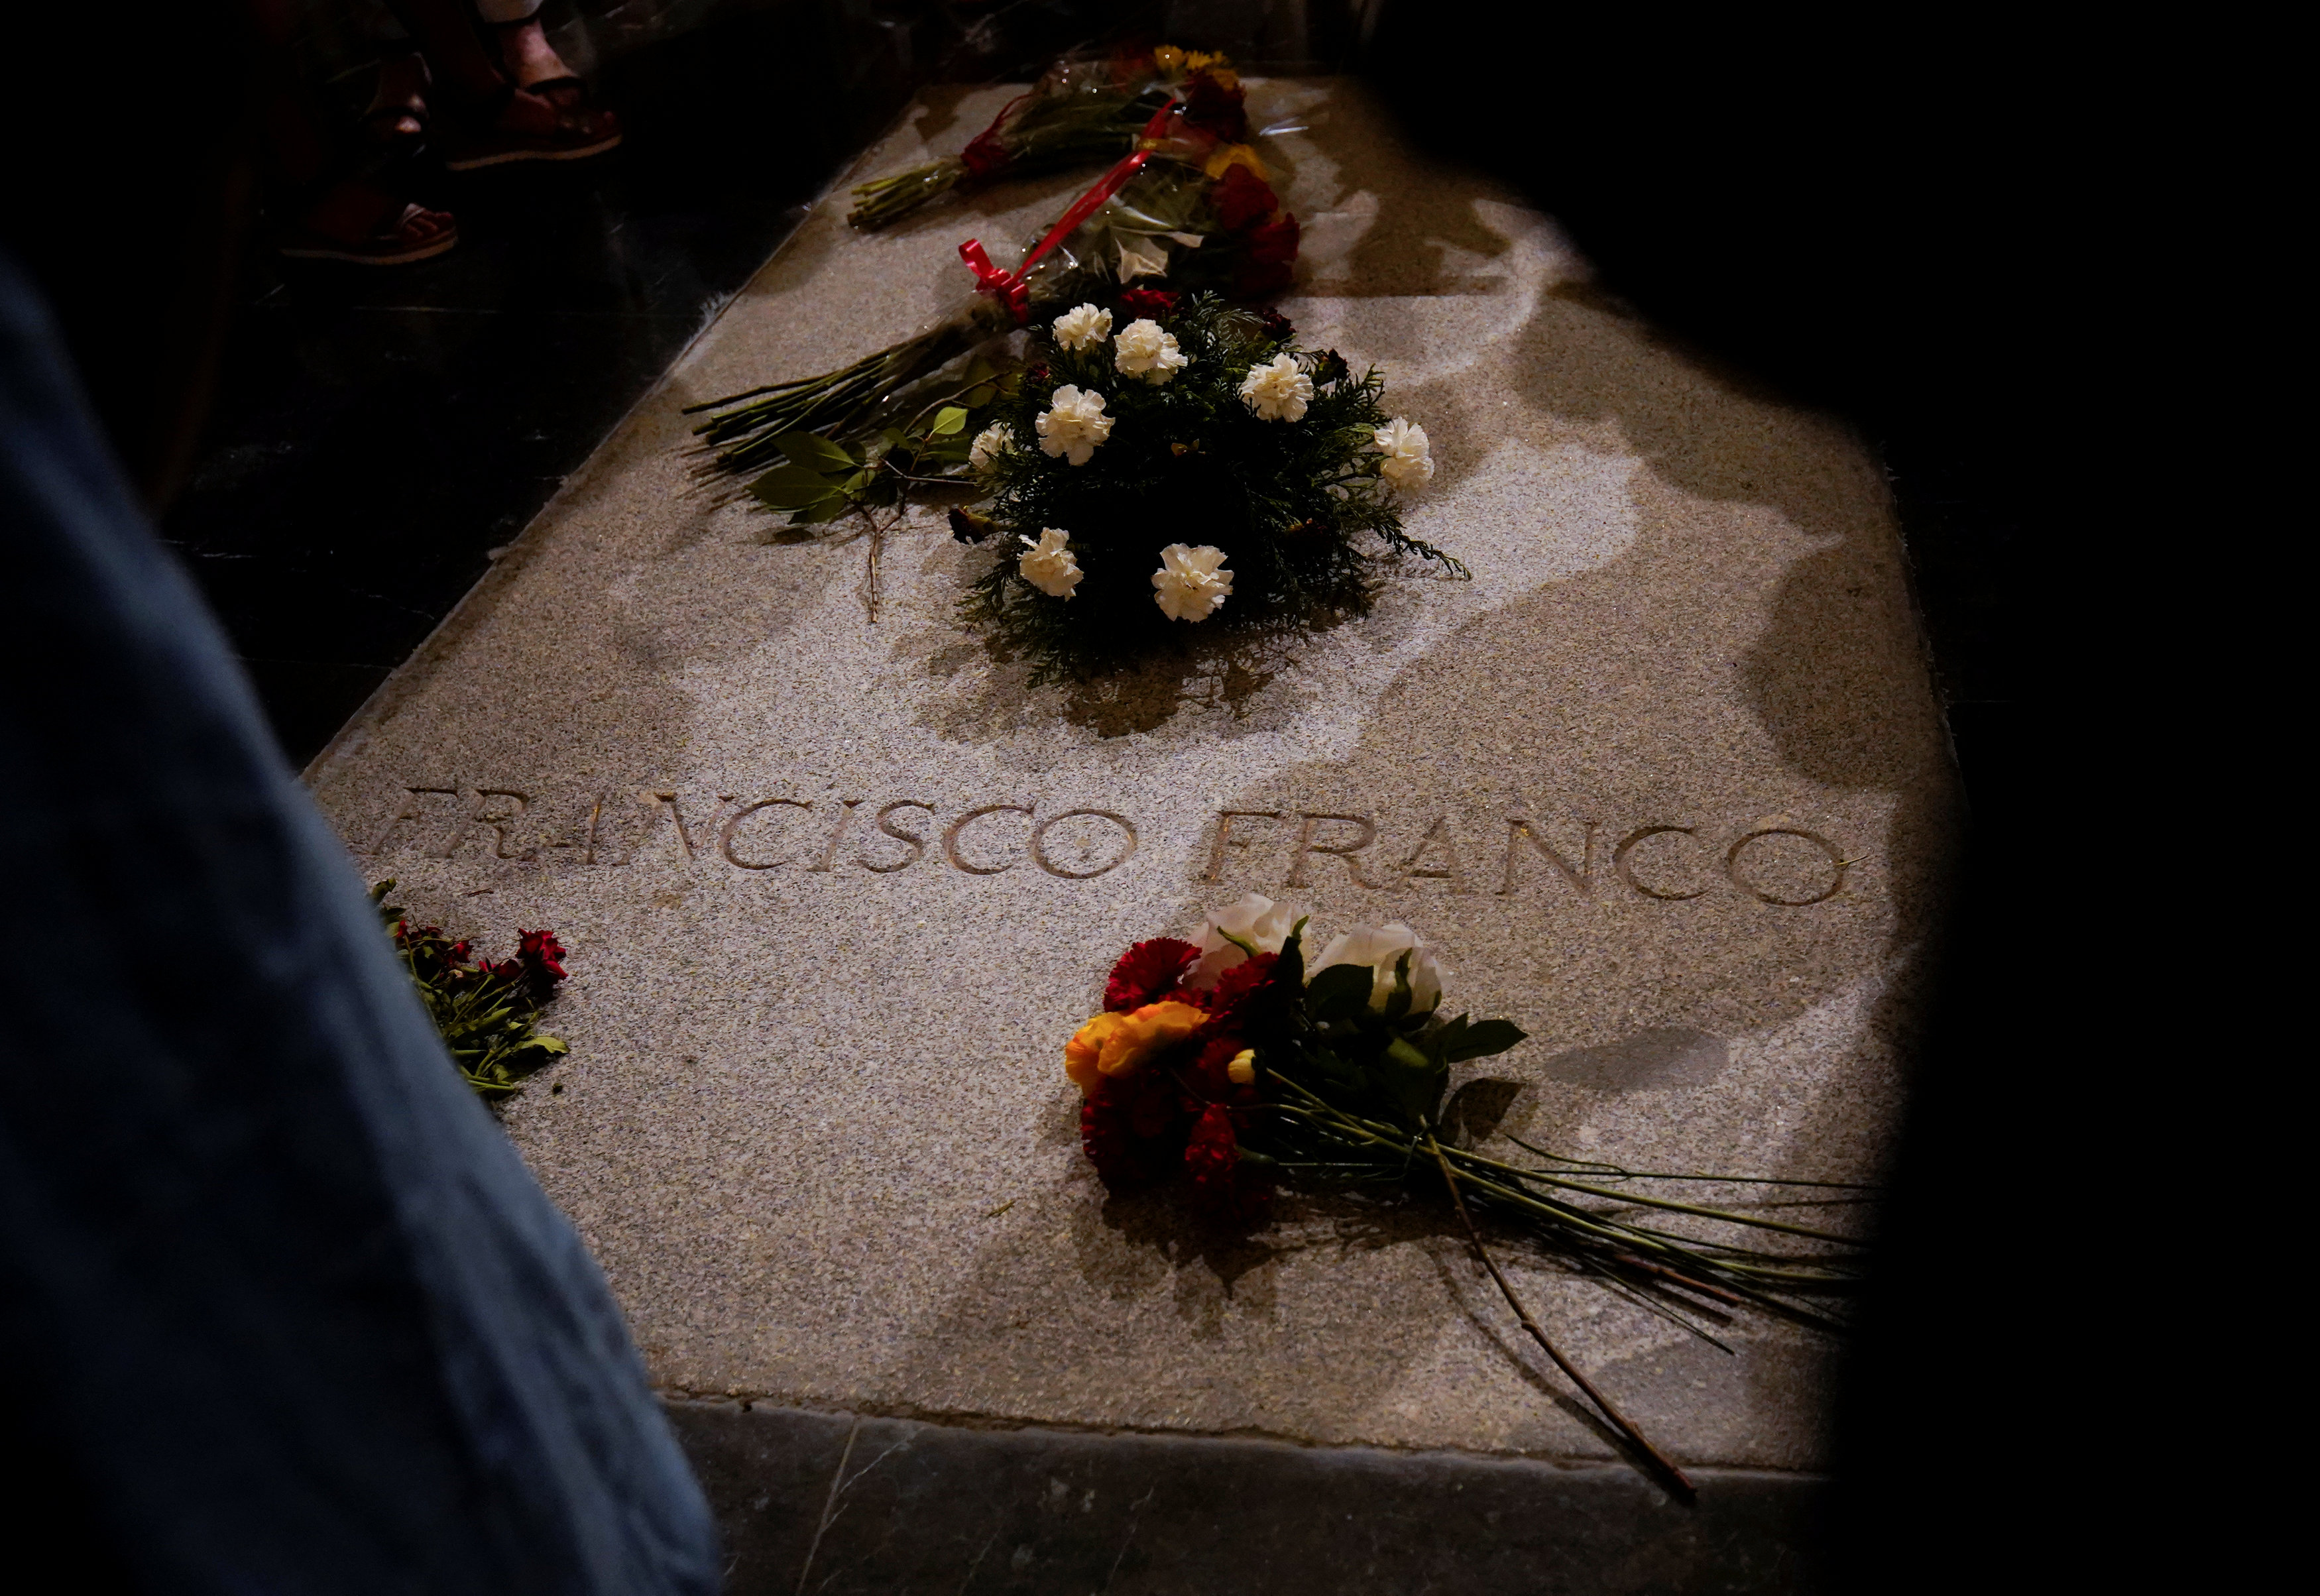 El Vaticano aclara su posición sobre restos de Franco